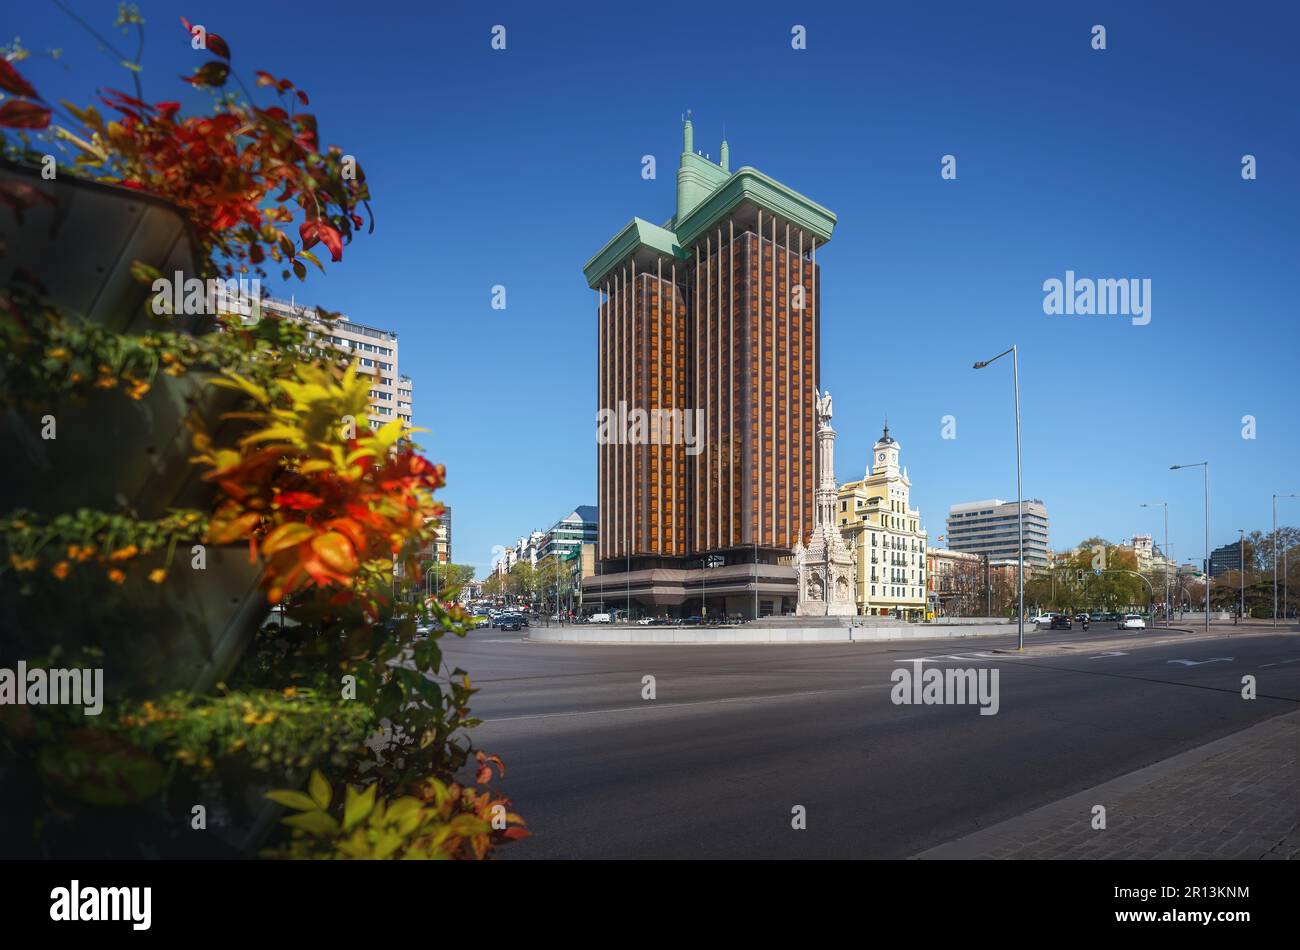 Place Plaza de Colon avec monument aux tours Christophe Colomb et Torres de Colon - Madrid, Espagne Banque D'Images